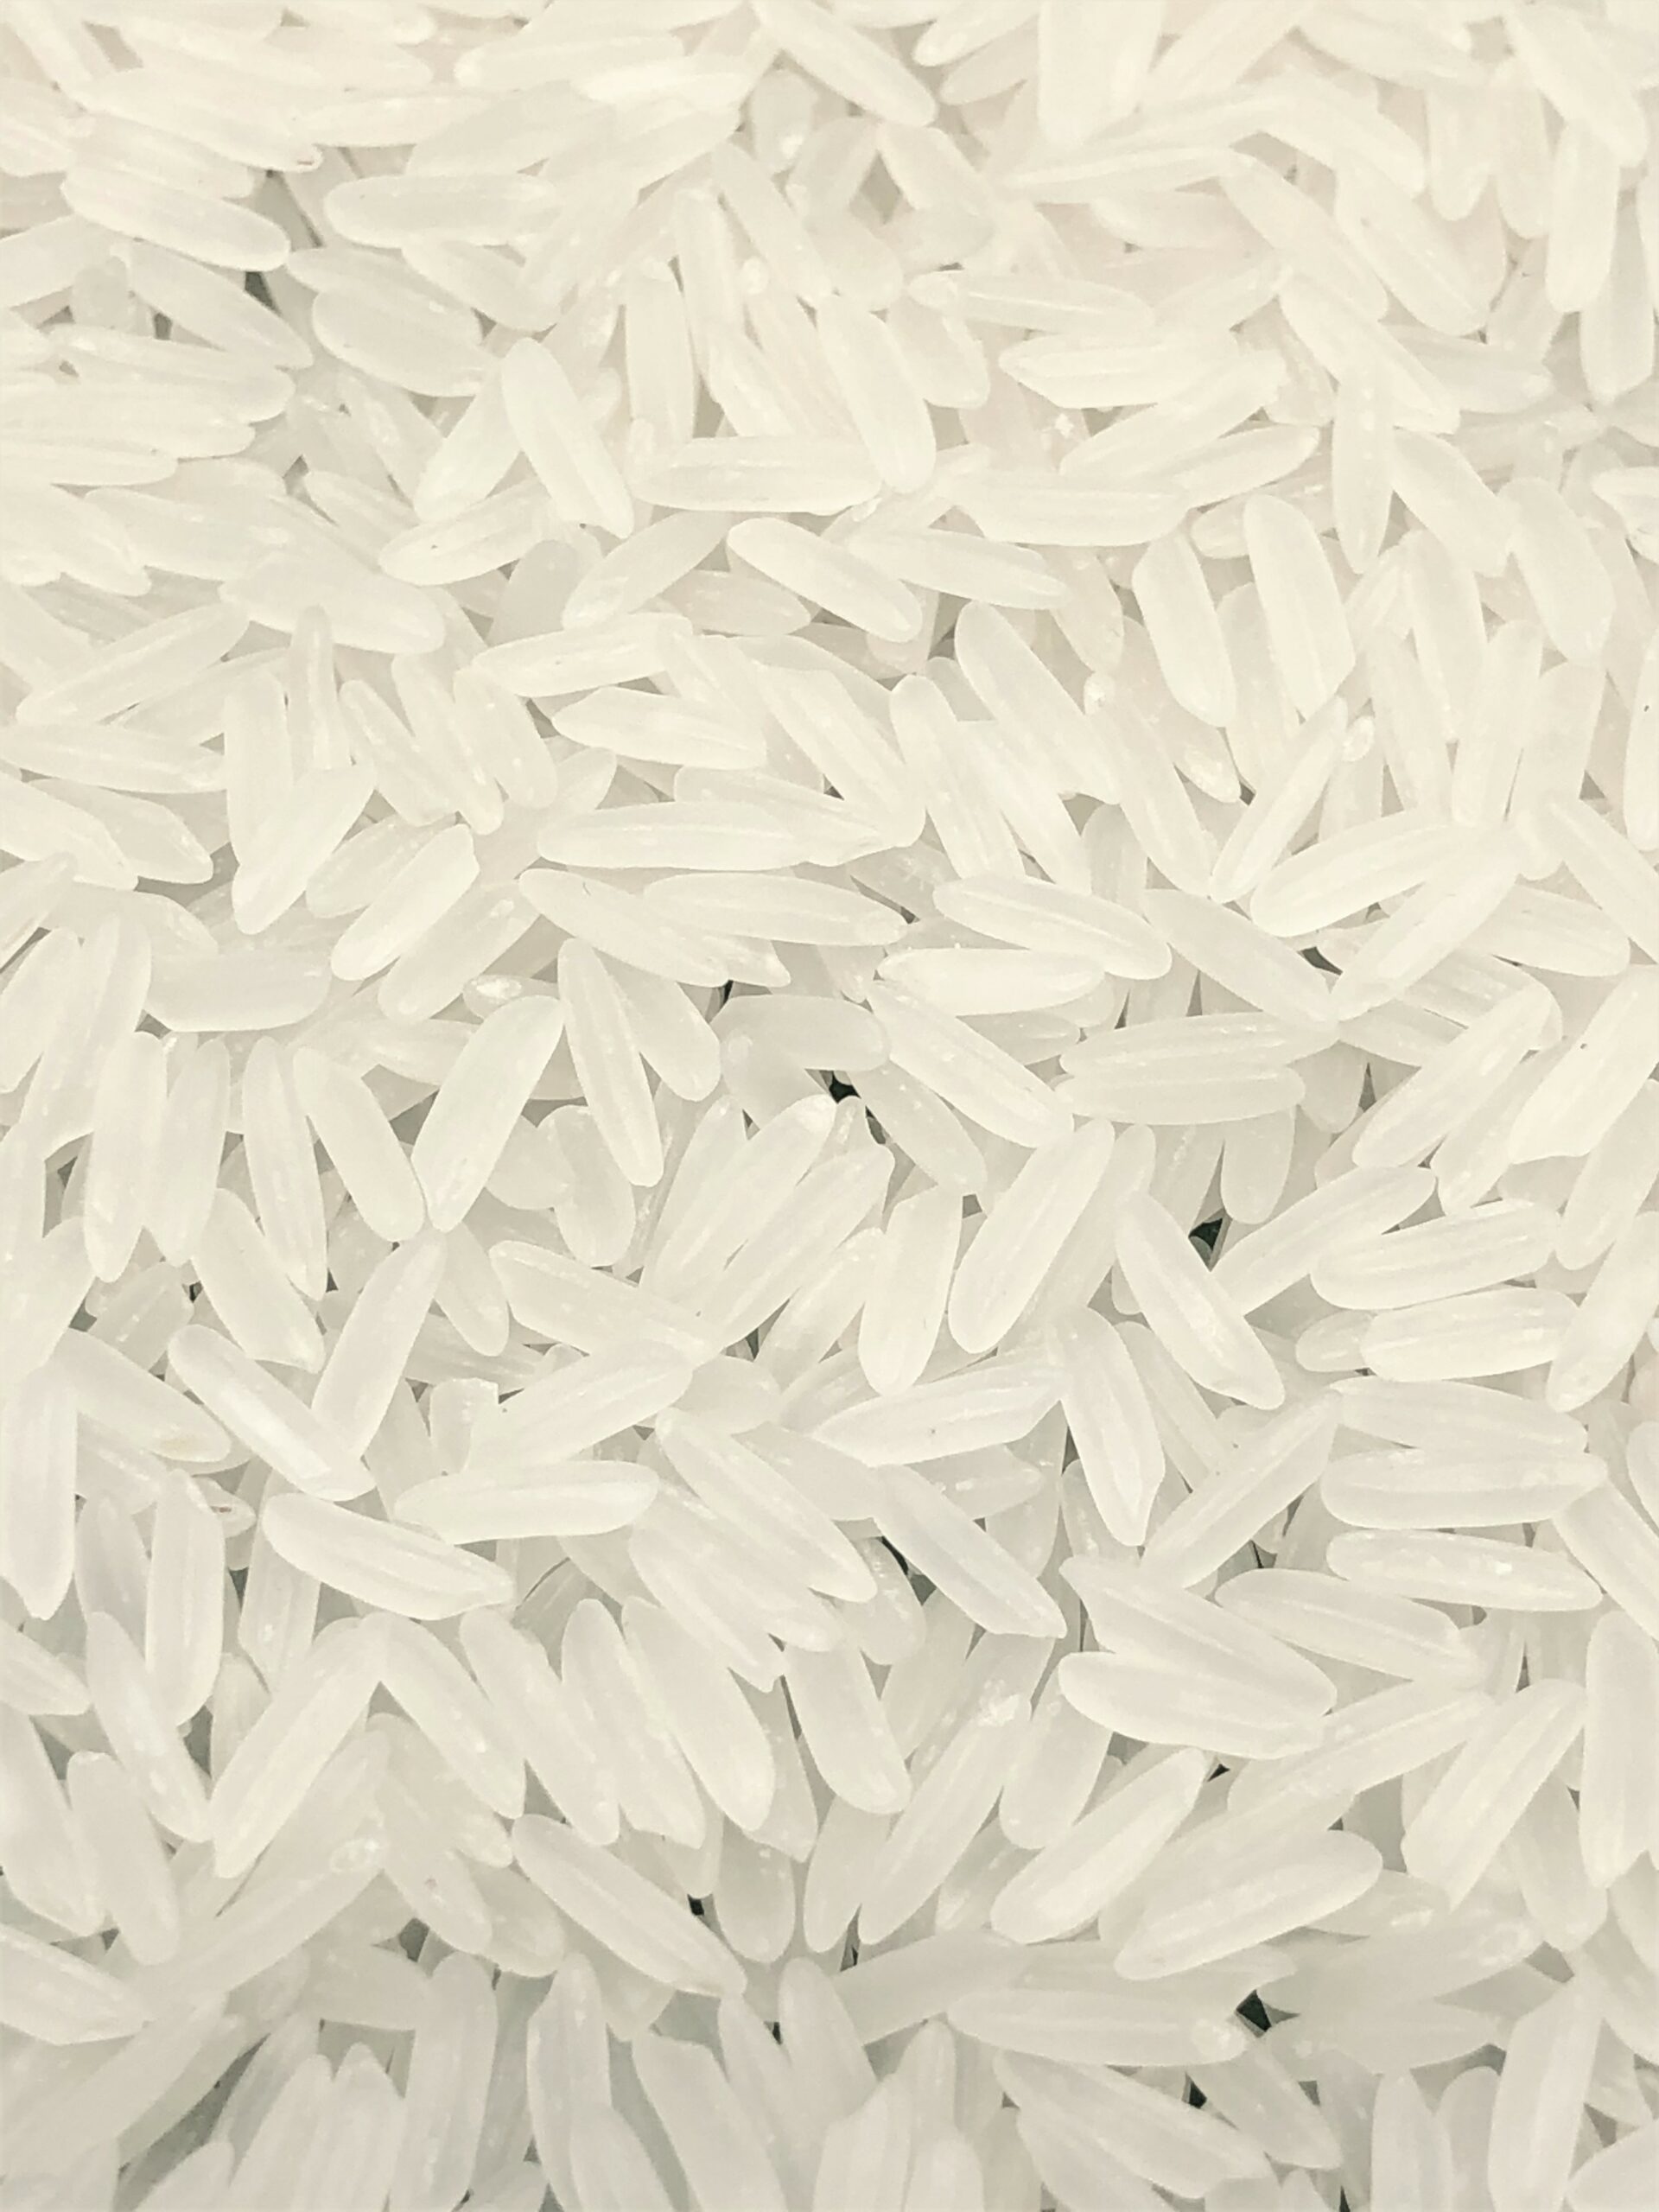 Fragrant Rice (Sen Kro Ob)